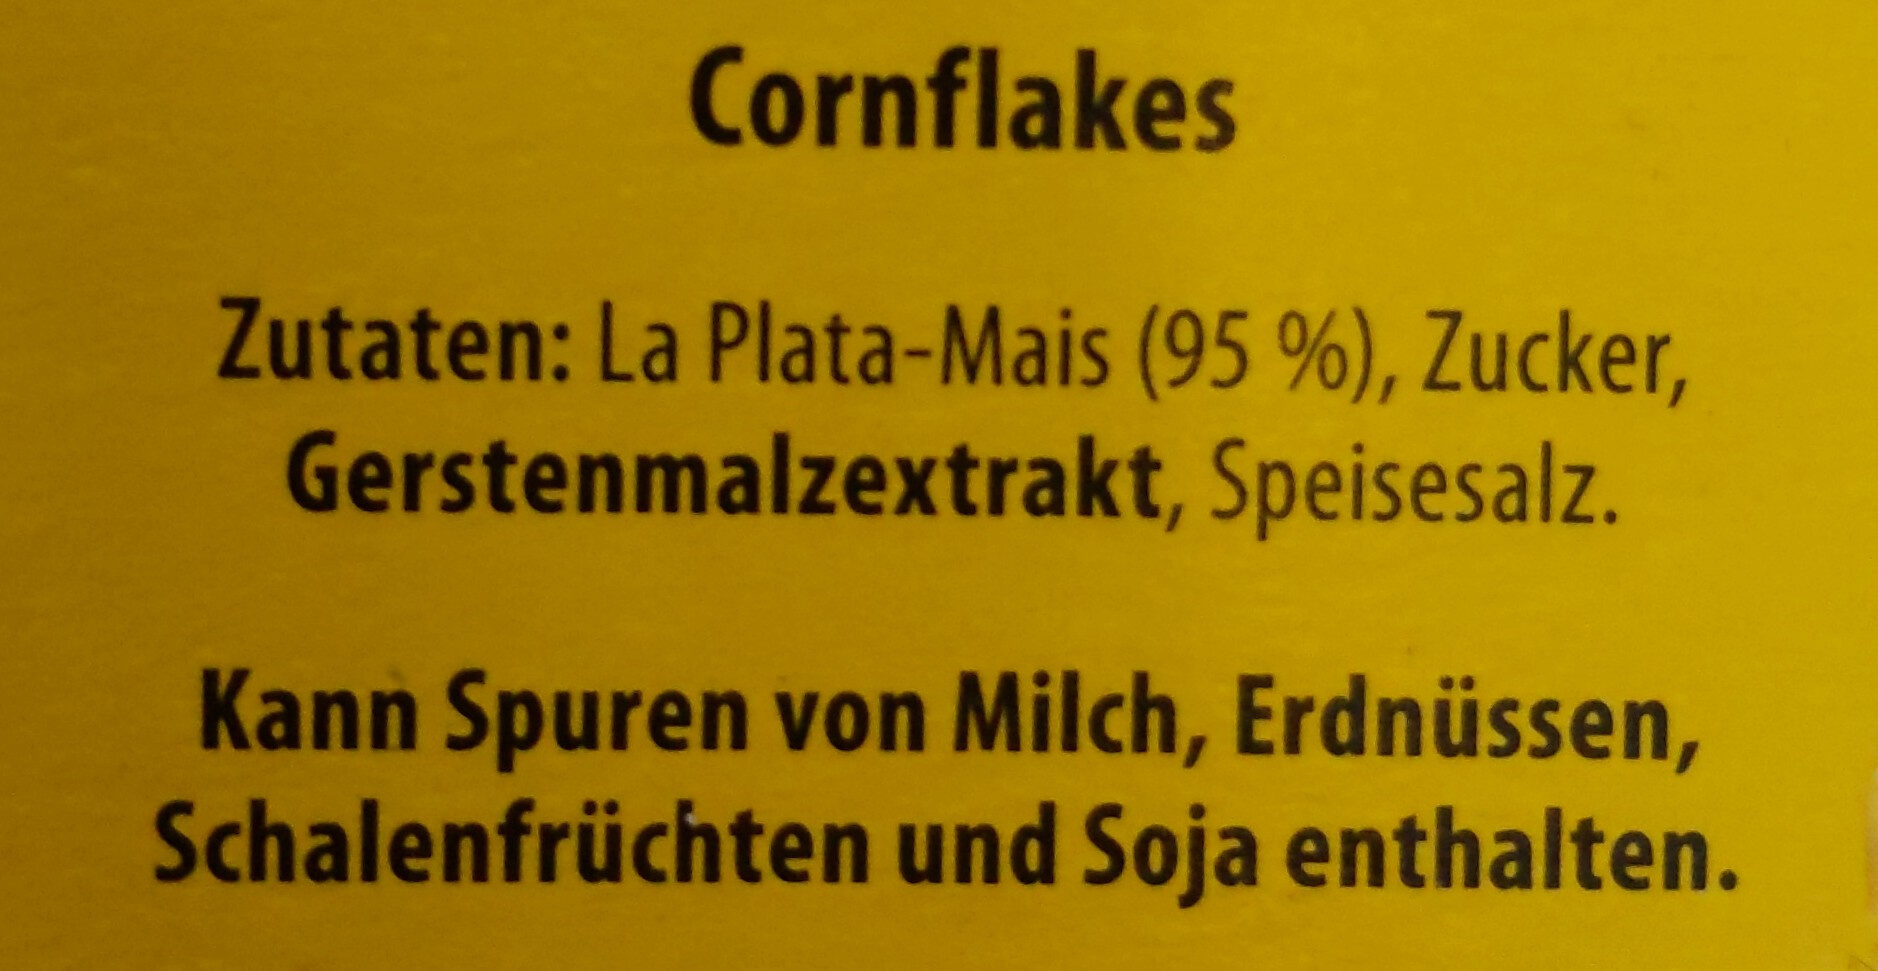 Corn Flakes - Zutaten